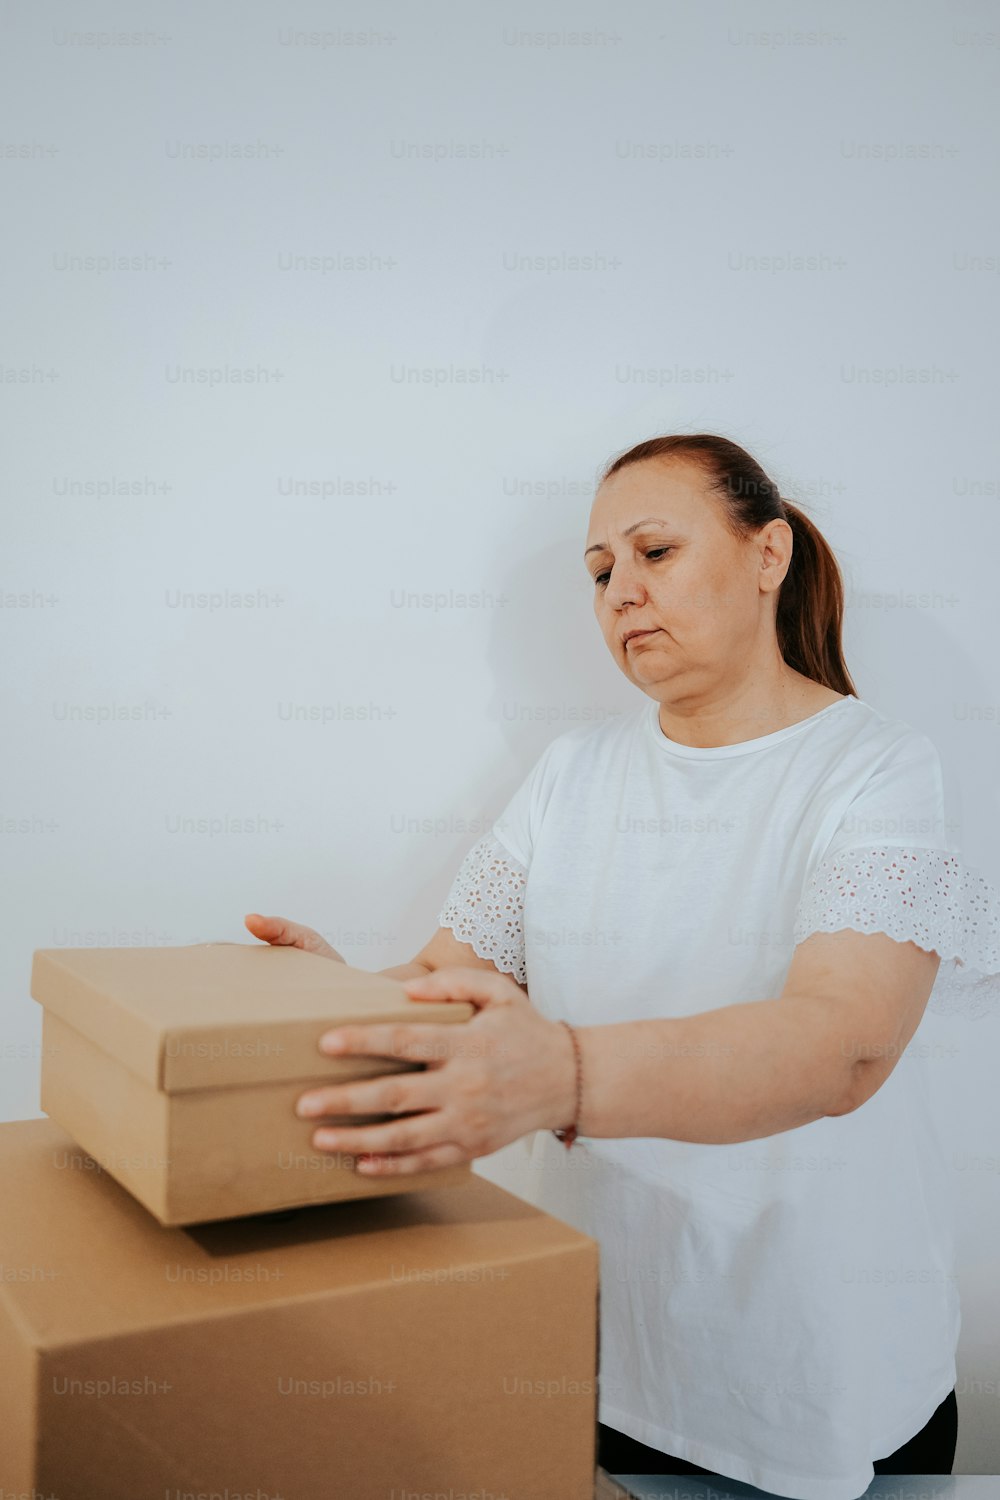 Una donna in piedi accanto a una pila di scatole